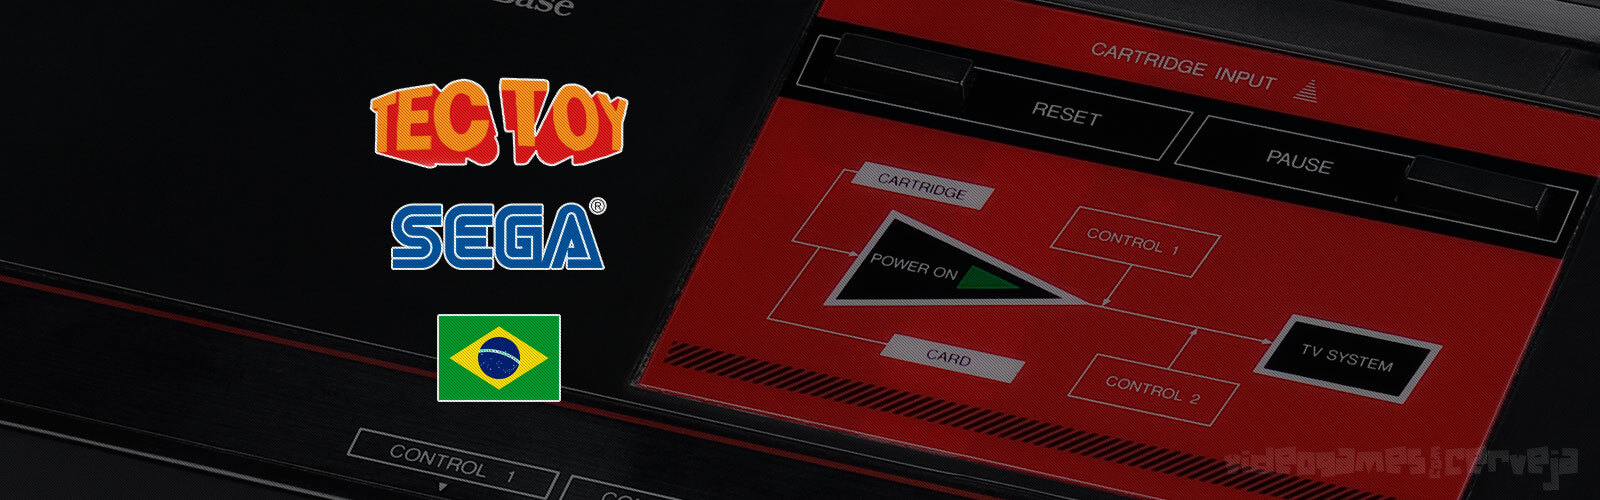 Lista de jogos de Master System exclusivos Tectoy para o Brasil Cover